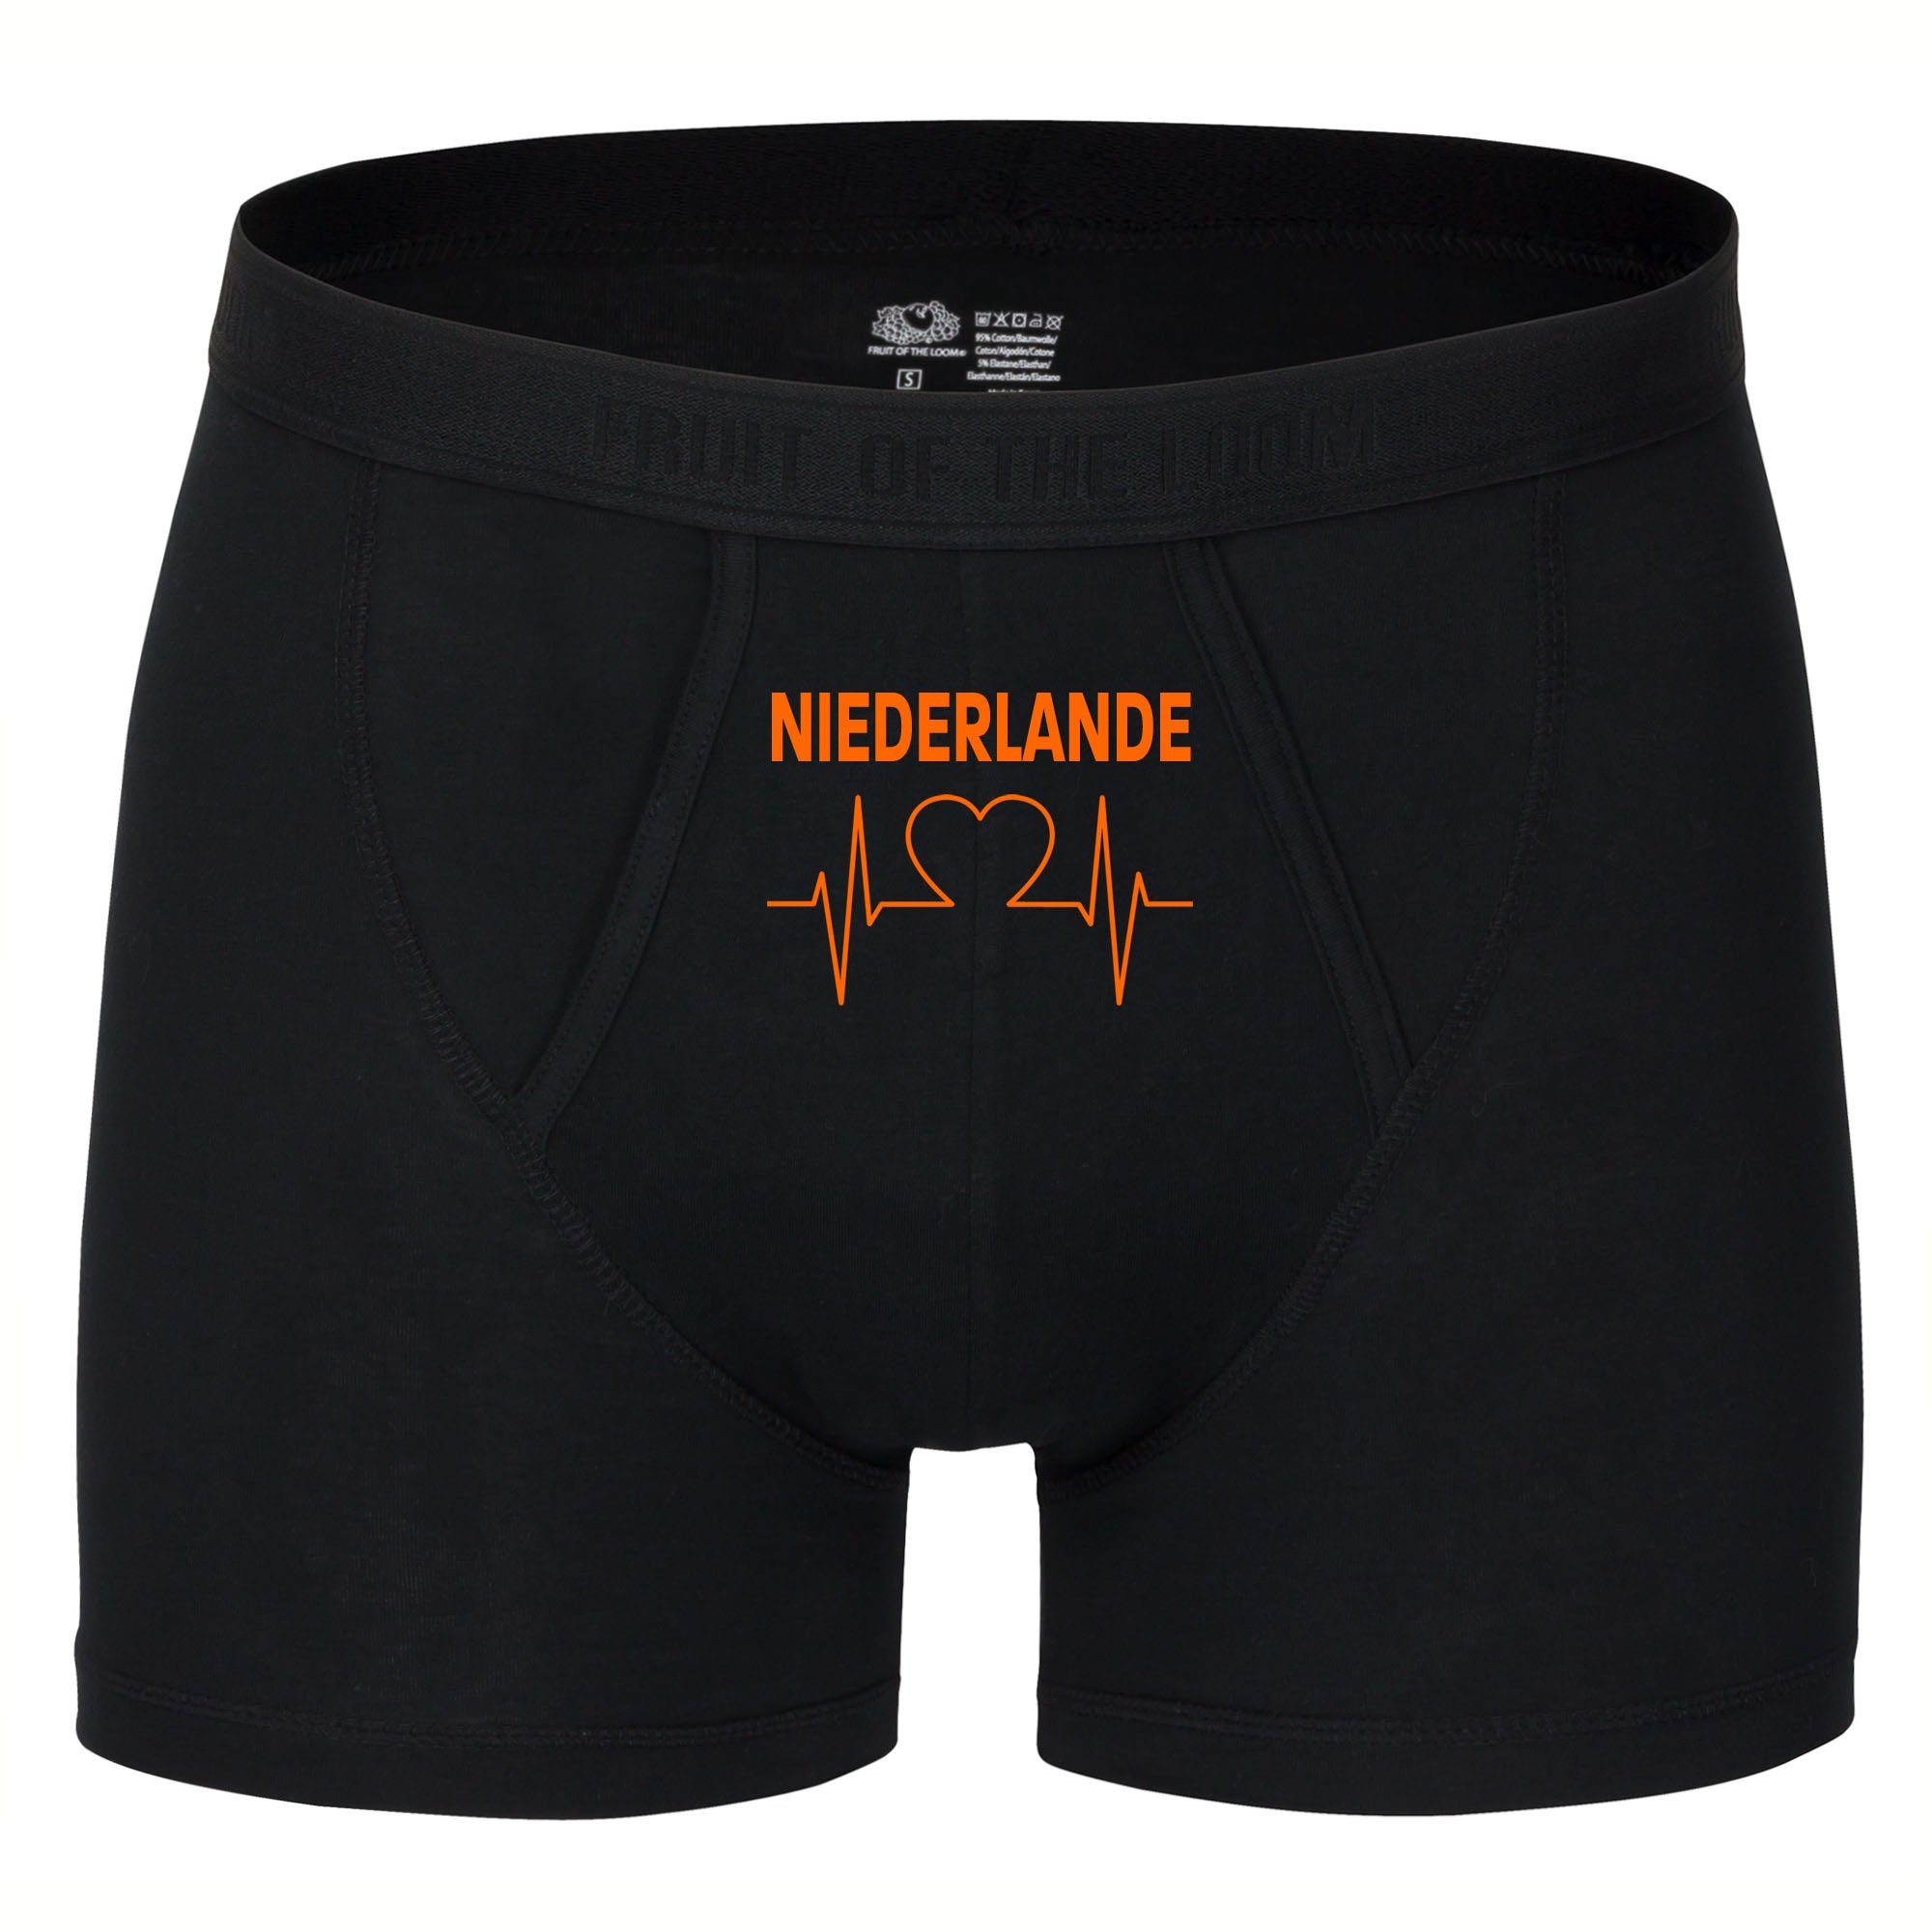 multifanshop Boxershorts Niederlande - Herzschlag - Unterwäsche